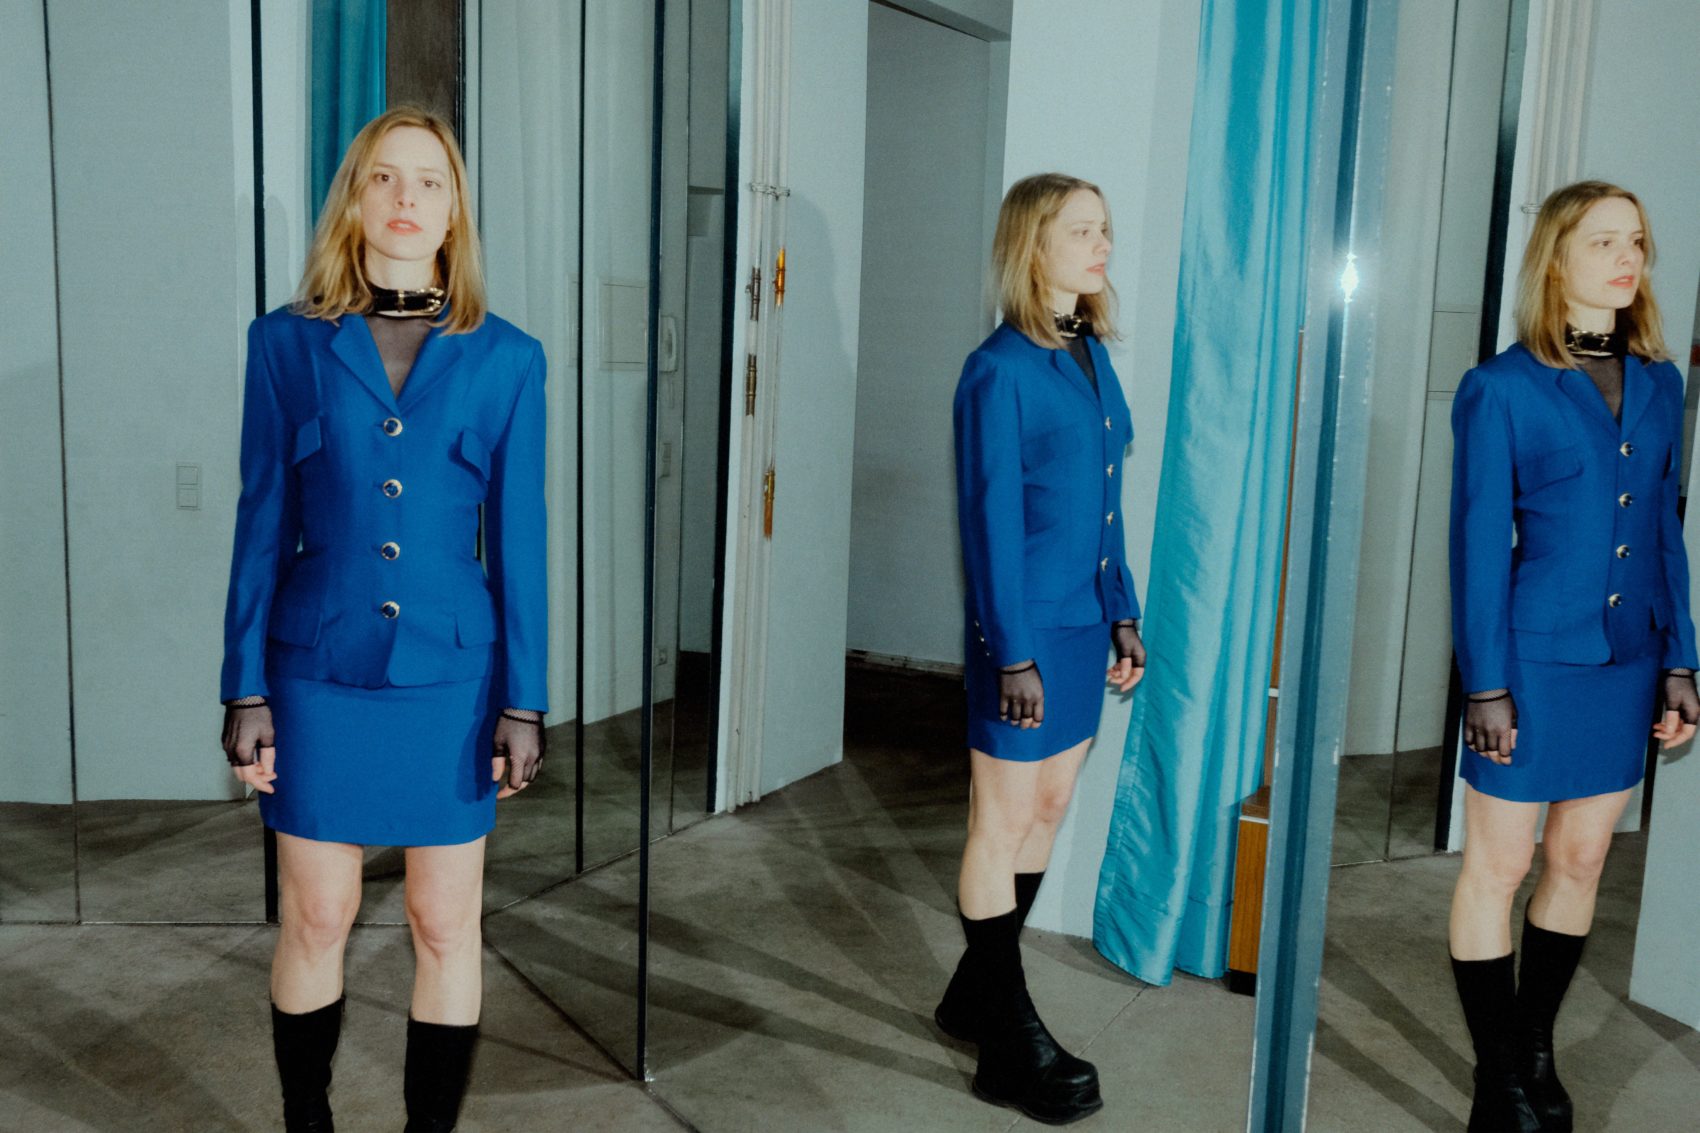 Anika en tailleur bleu avec son reflet en 2 fois dans des miroirs